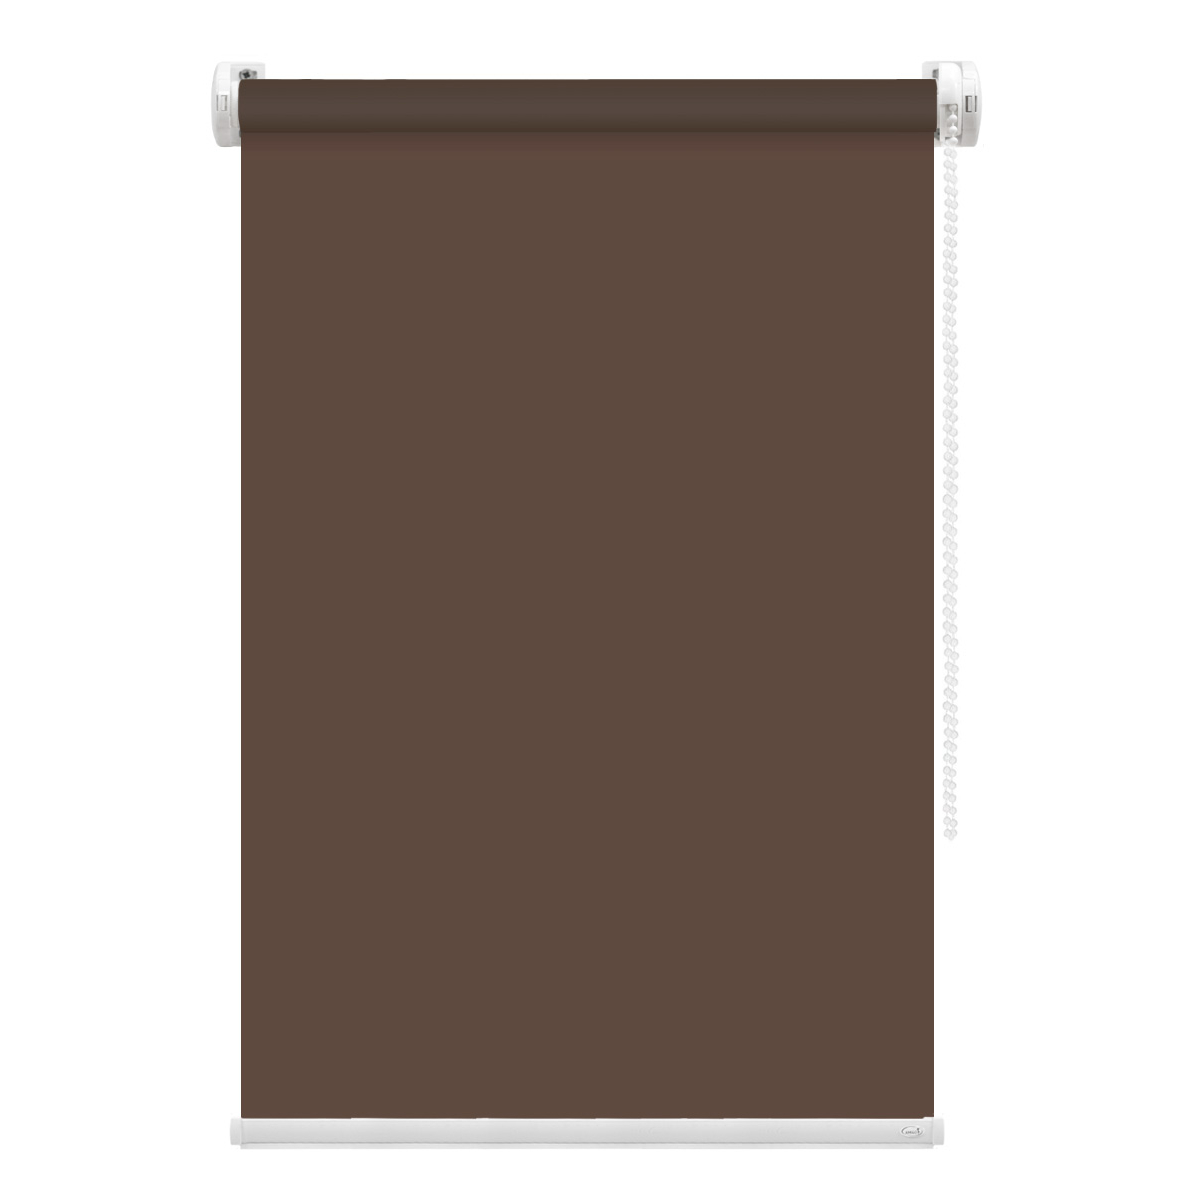 Рулонная штора FixLine Amigo Basic коричневая 50х160 см рулонная штора fixline amigo basic коричневая 65х160 см